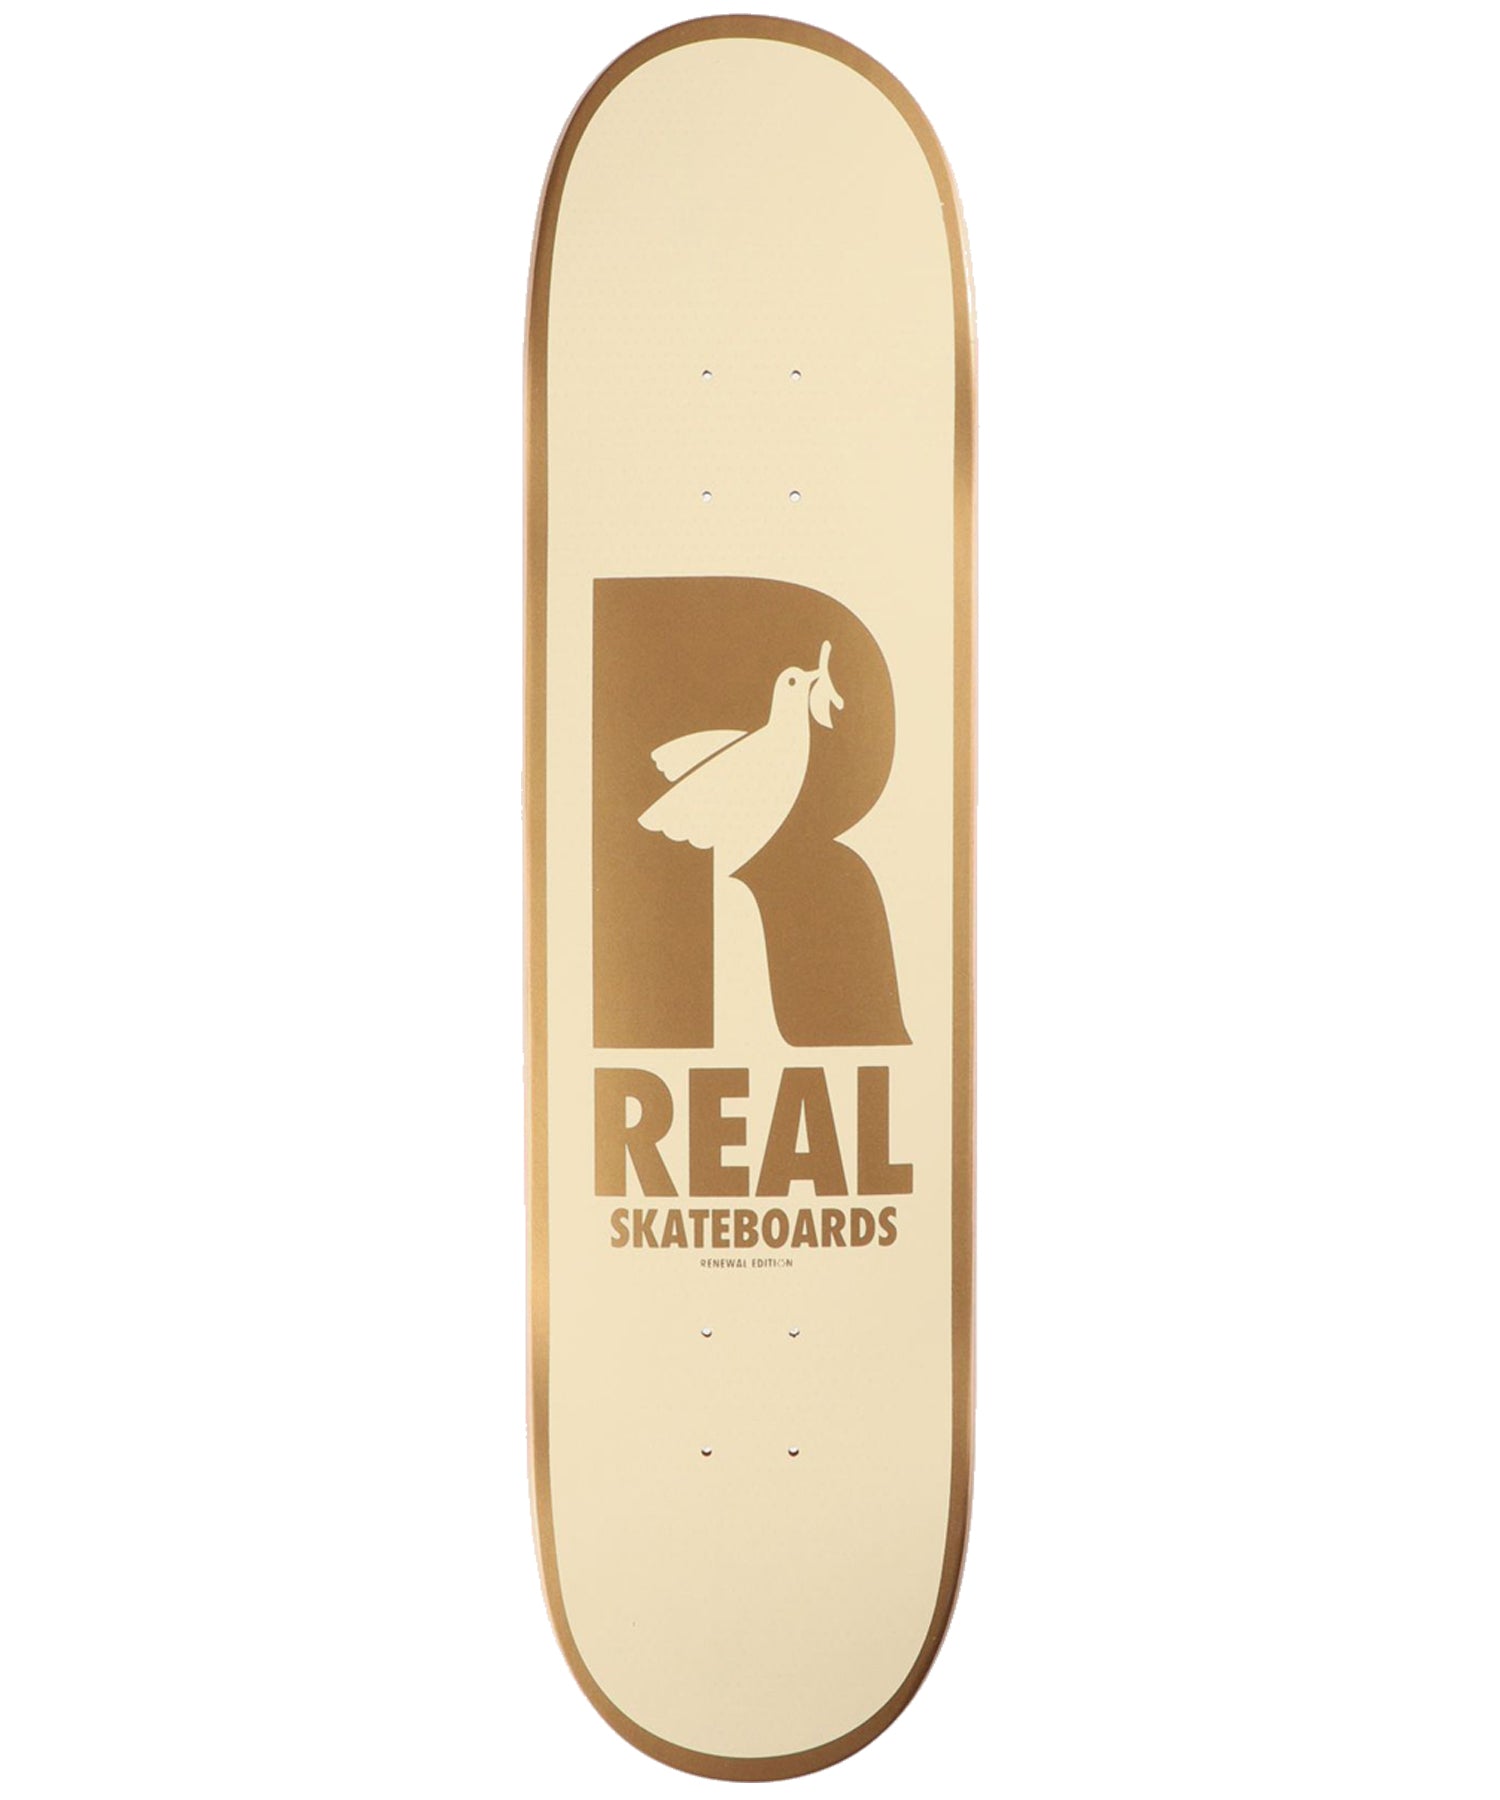 Real-Dove Redux Renewals 8-38-tabla de skate-cóncavo-medio-7 laminas de arce-renewal edition- Incluye lija gratis.